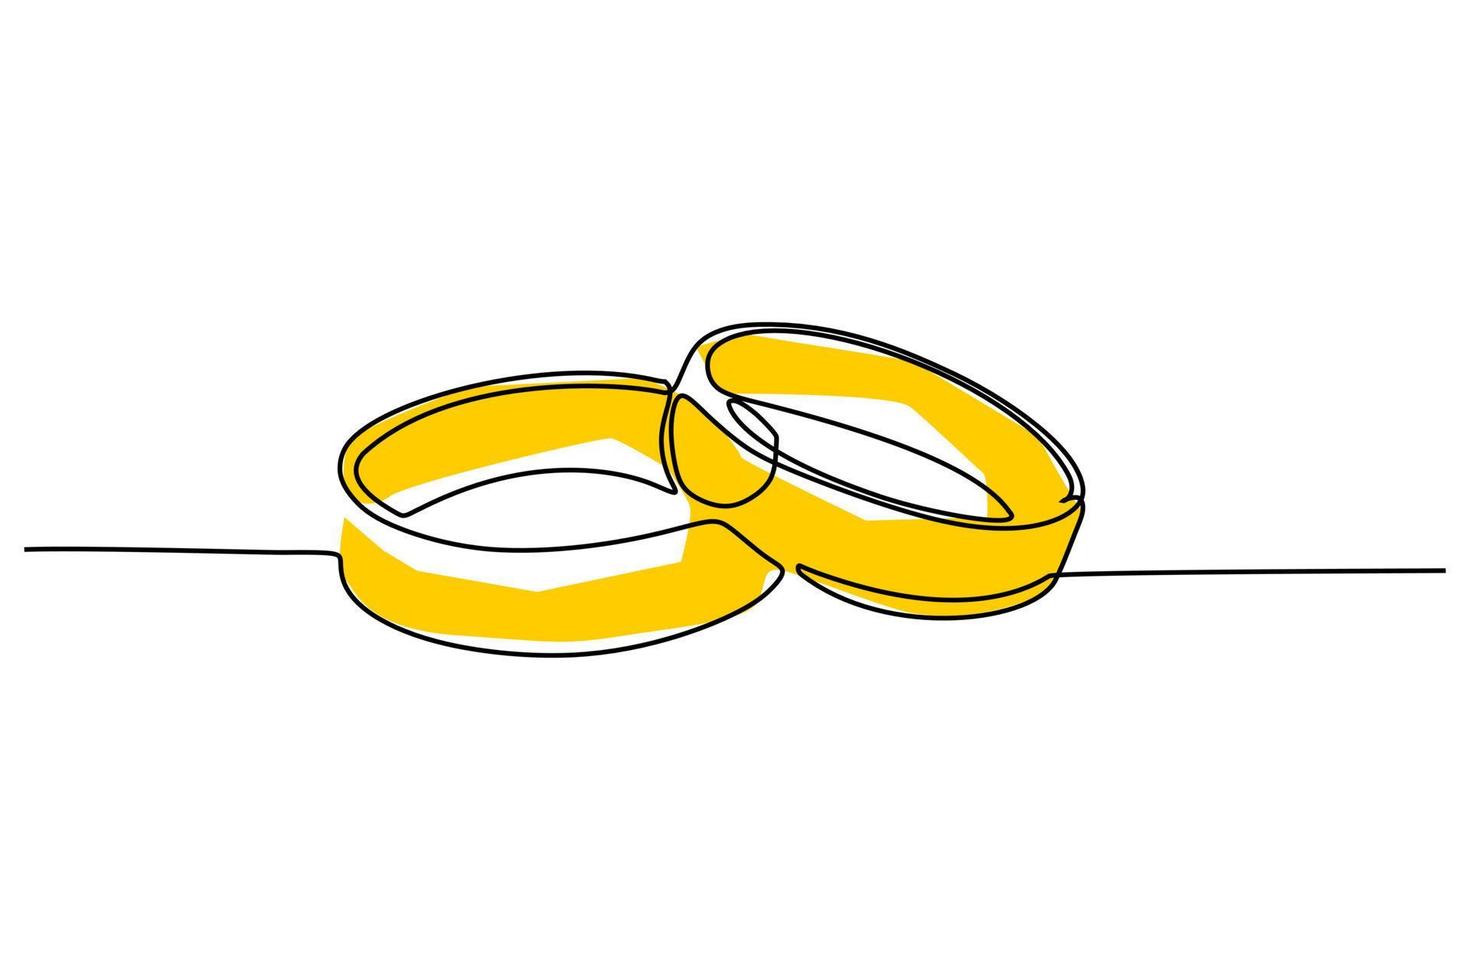 dessin en ligne continue simple de deux anneaux. conception simple de dessin de couleur jaune ou or pour un concept de couple ou de mariage vecteur